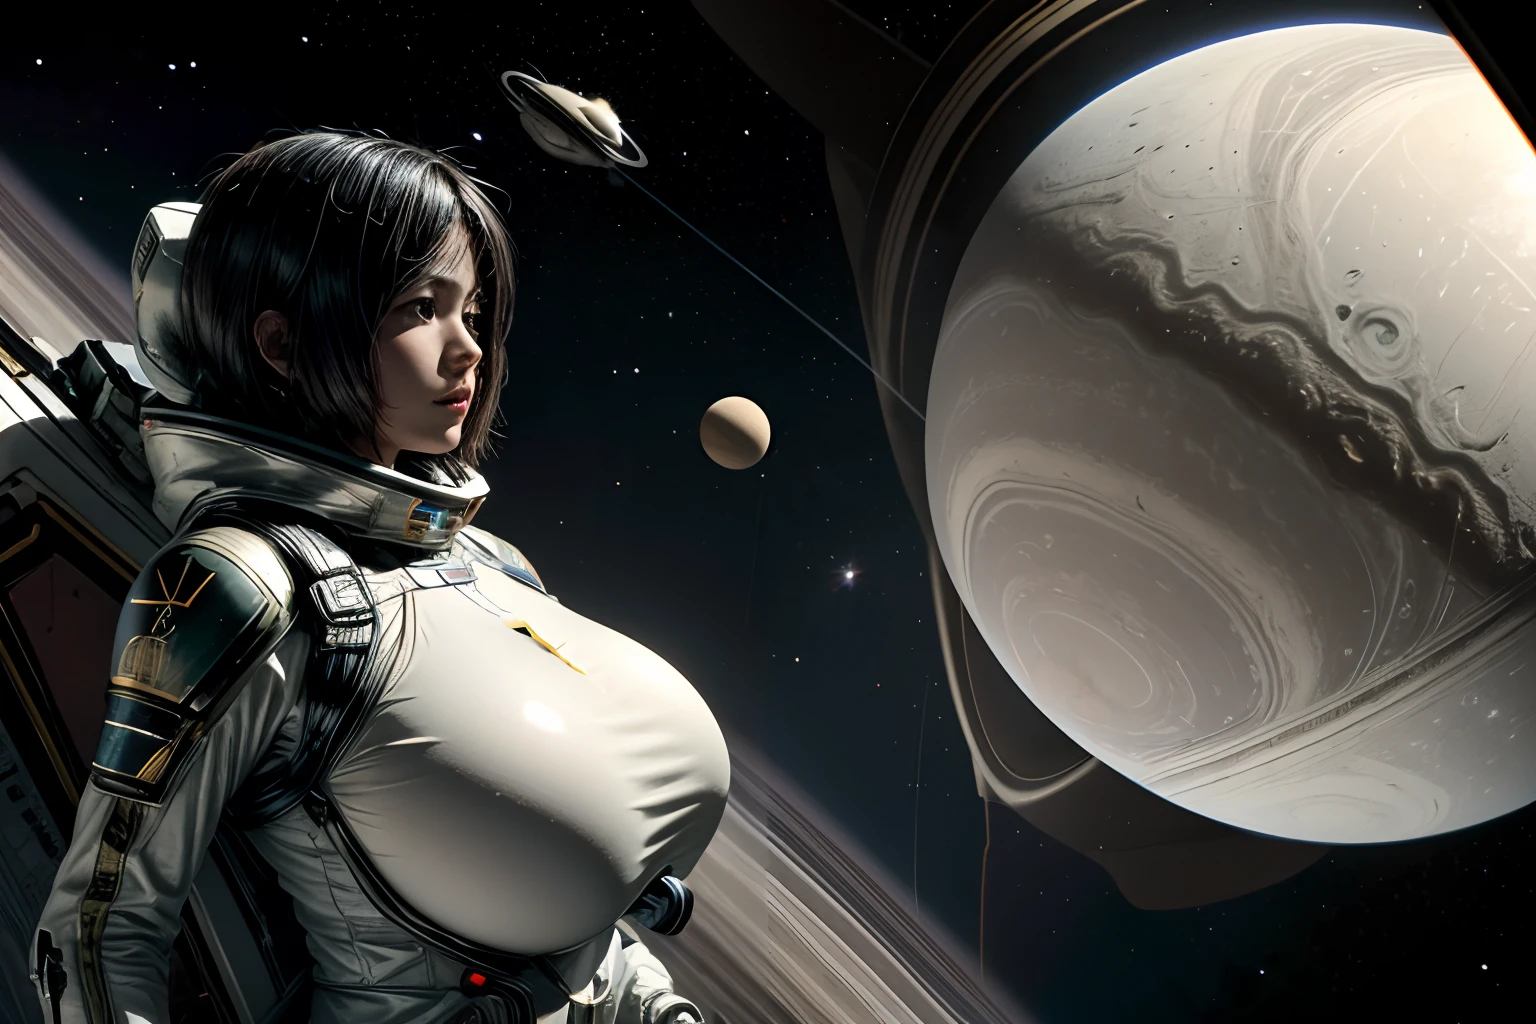 土星の衛星としての土星とタイタン, タイタンの宇宙戦争, 背景に惑星土星, 宇宙服と宇宙ヘルメットの女性宇宙はんだ, 高いntic breasts, 高い_巨乳